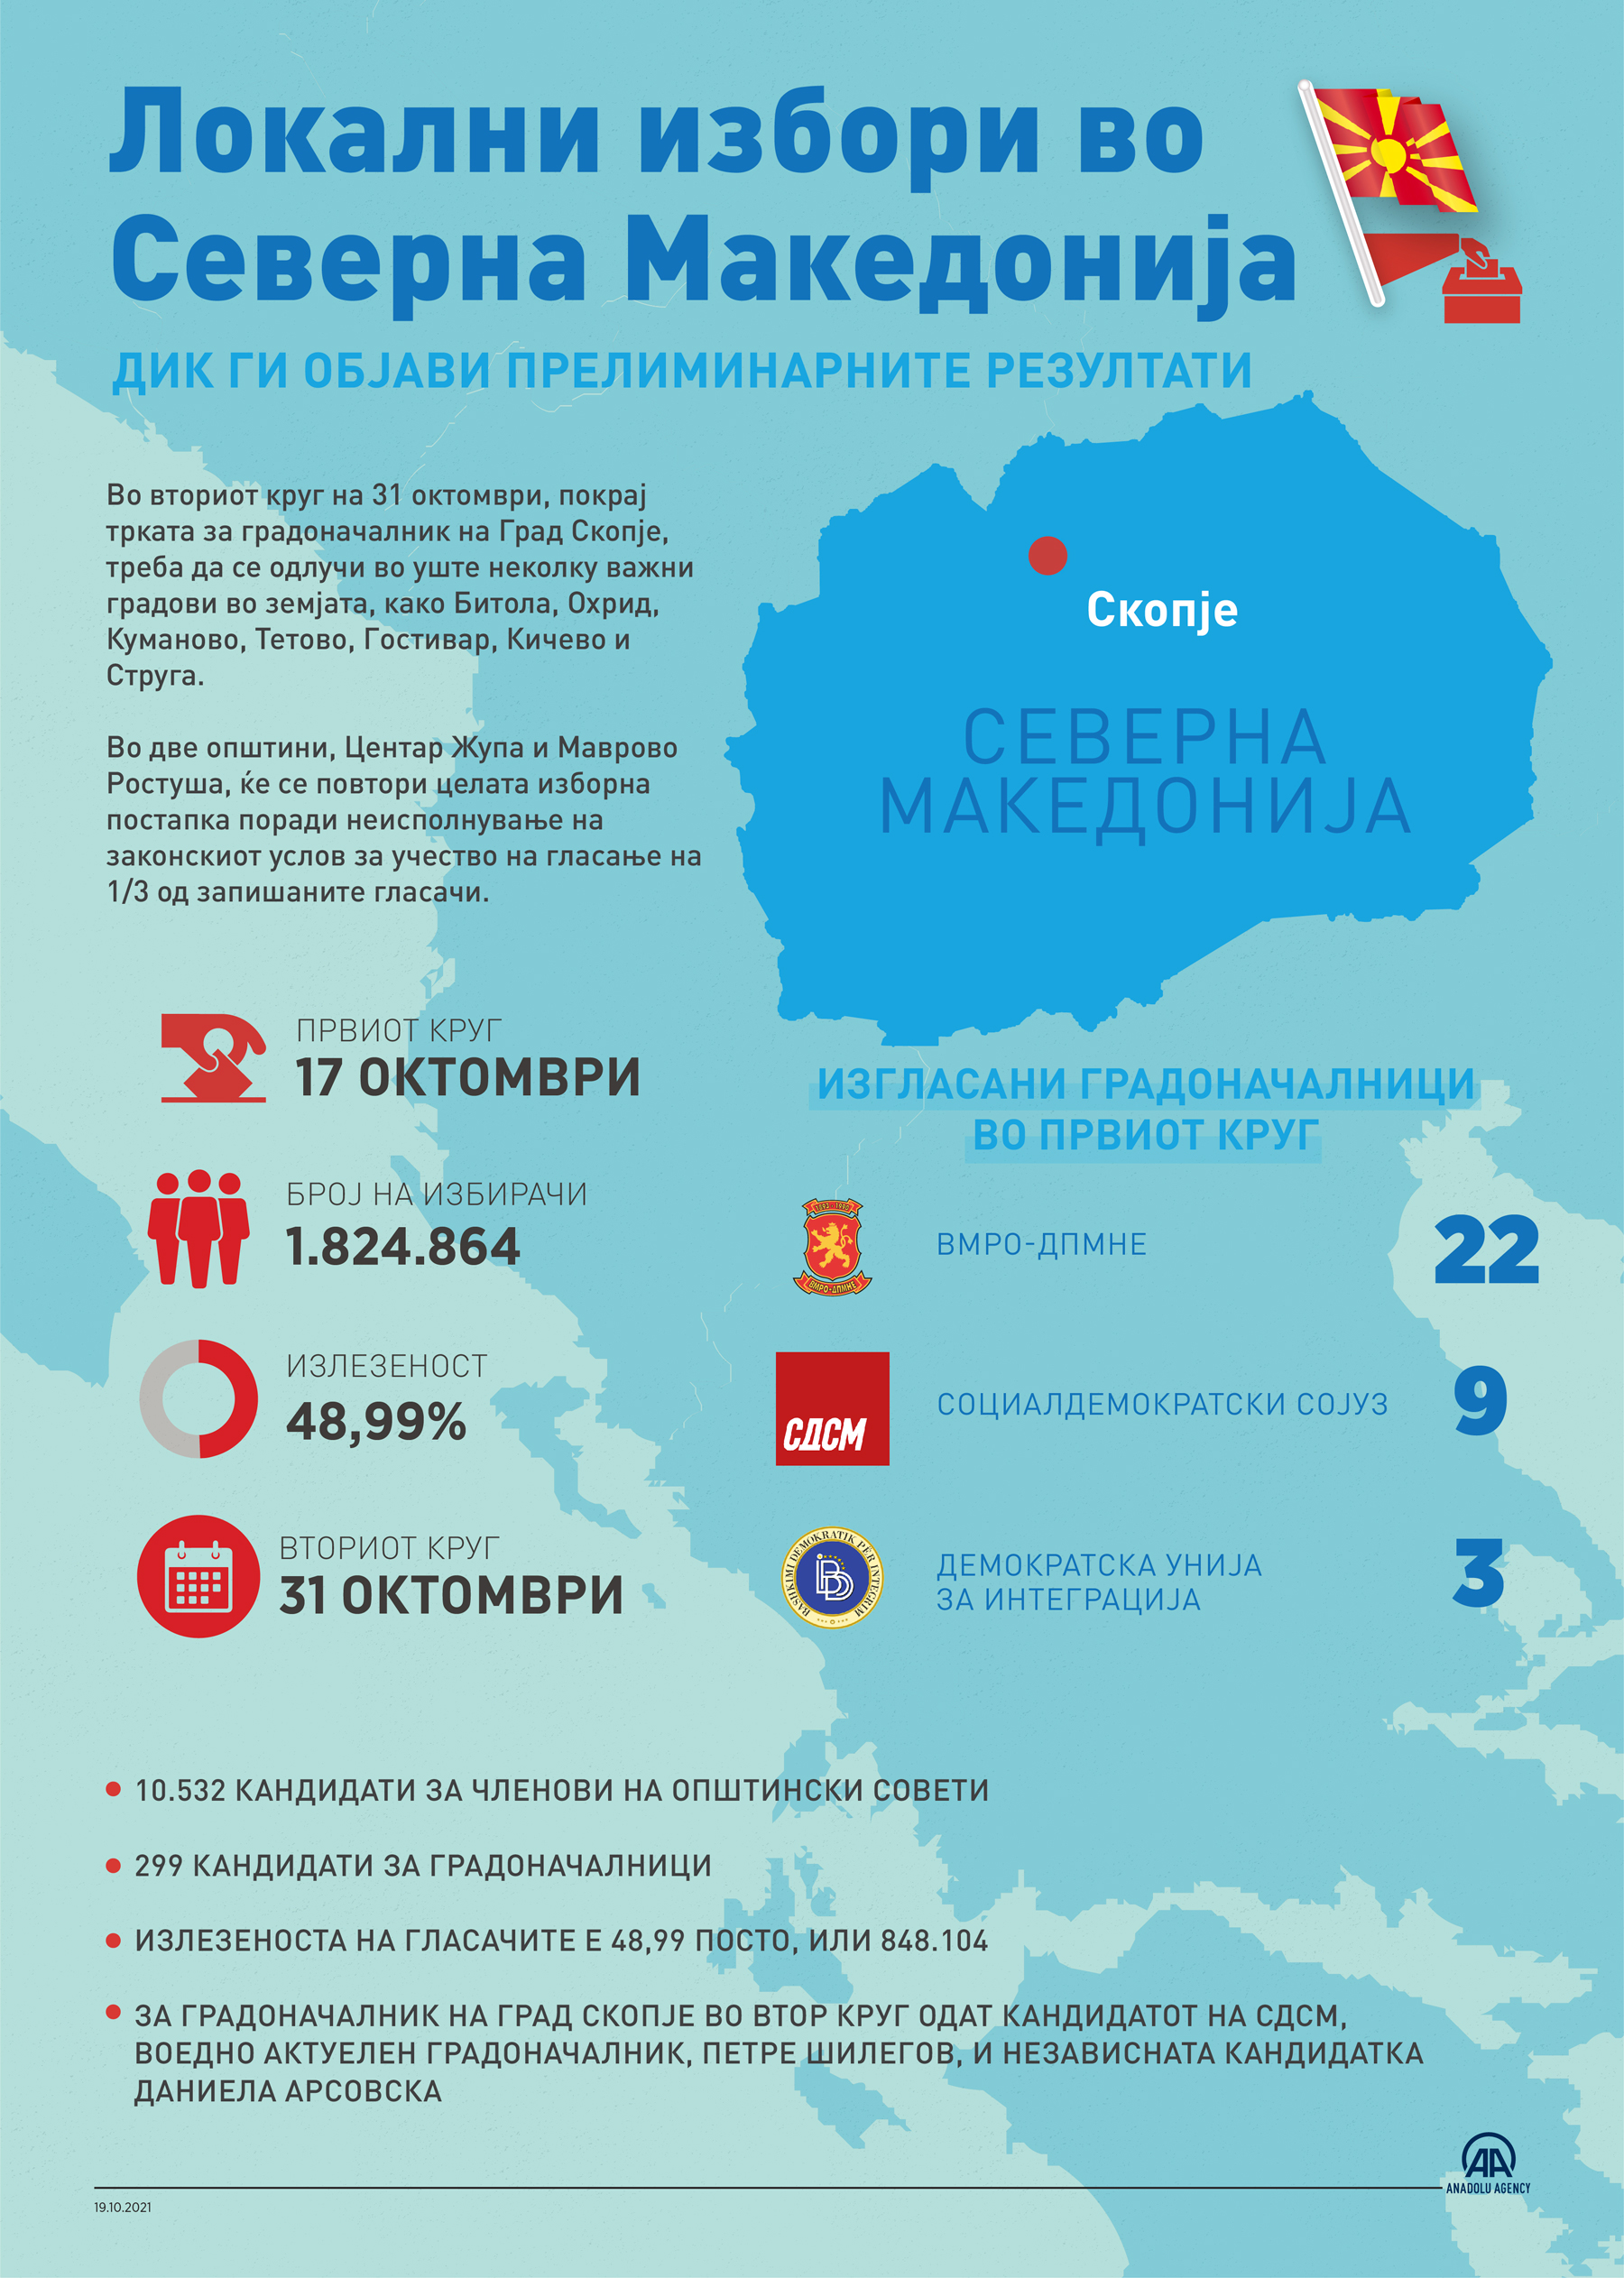 ДИК ги објави прелиминарните резултати од Локалните избори во Северна Македонија